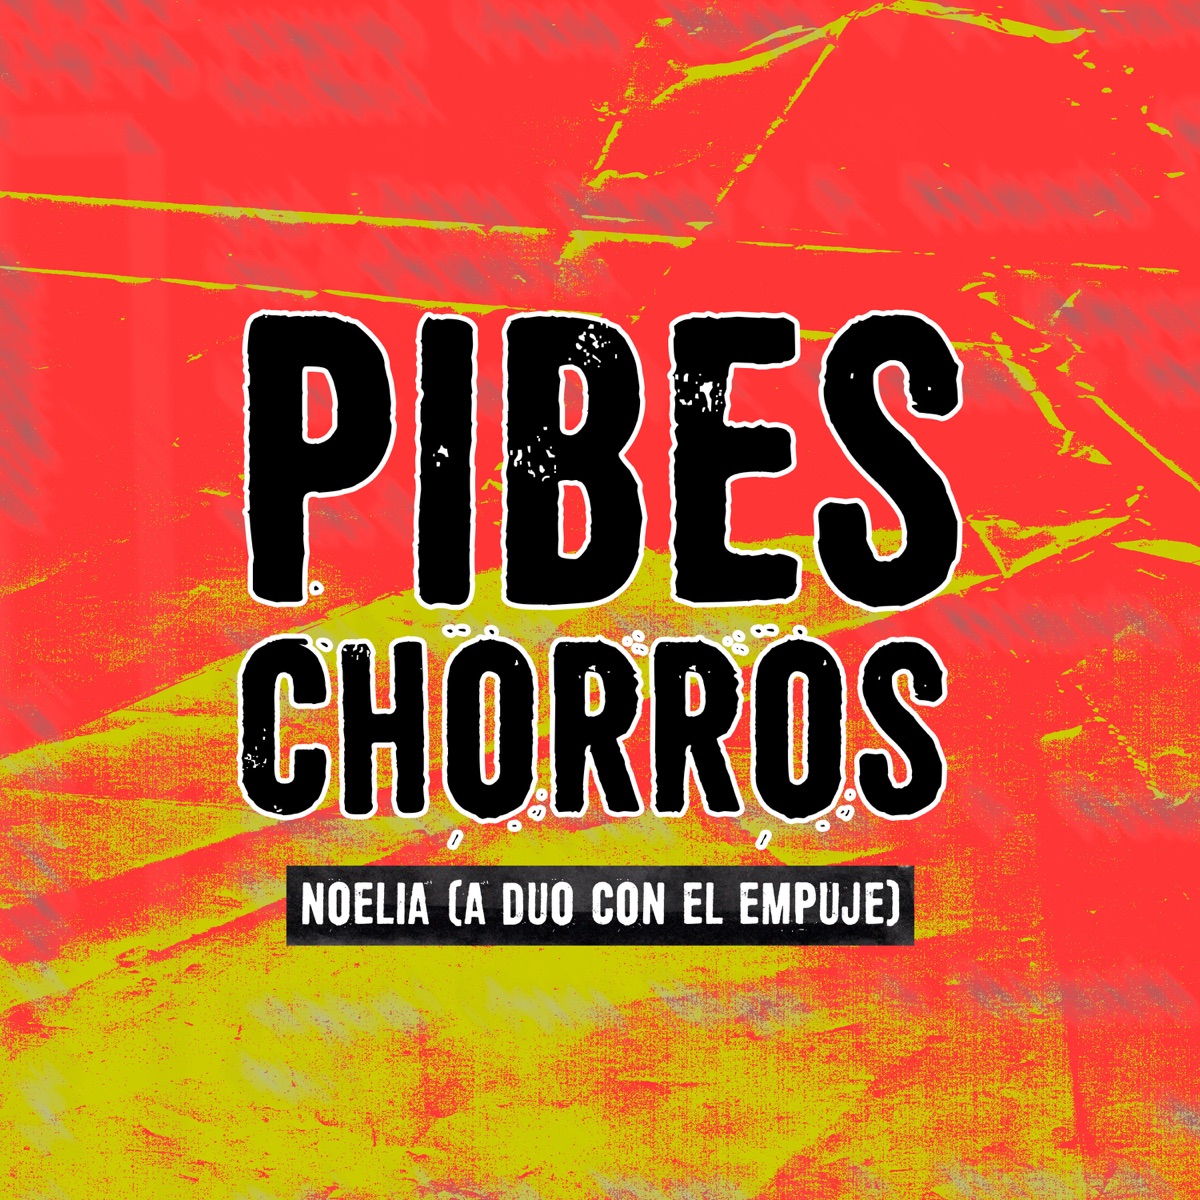 Pibes Chorros - Criando Cuervos — Los Pibes Chorros